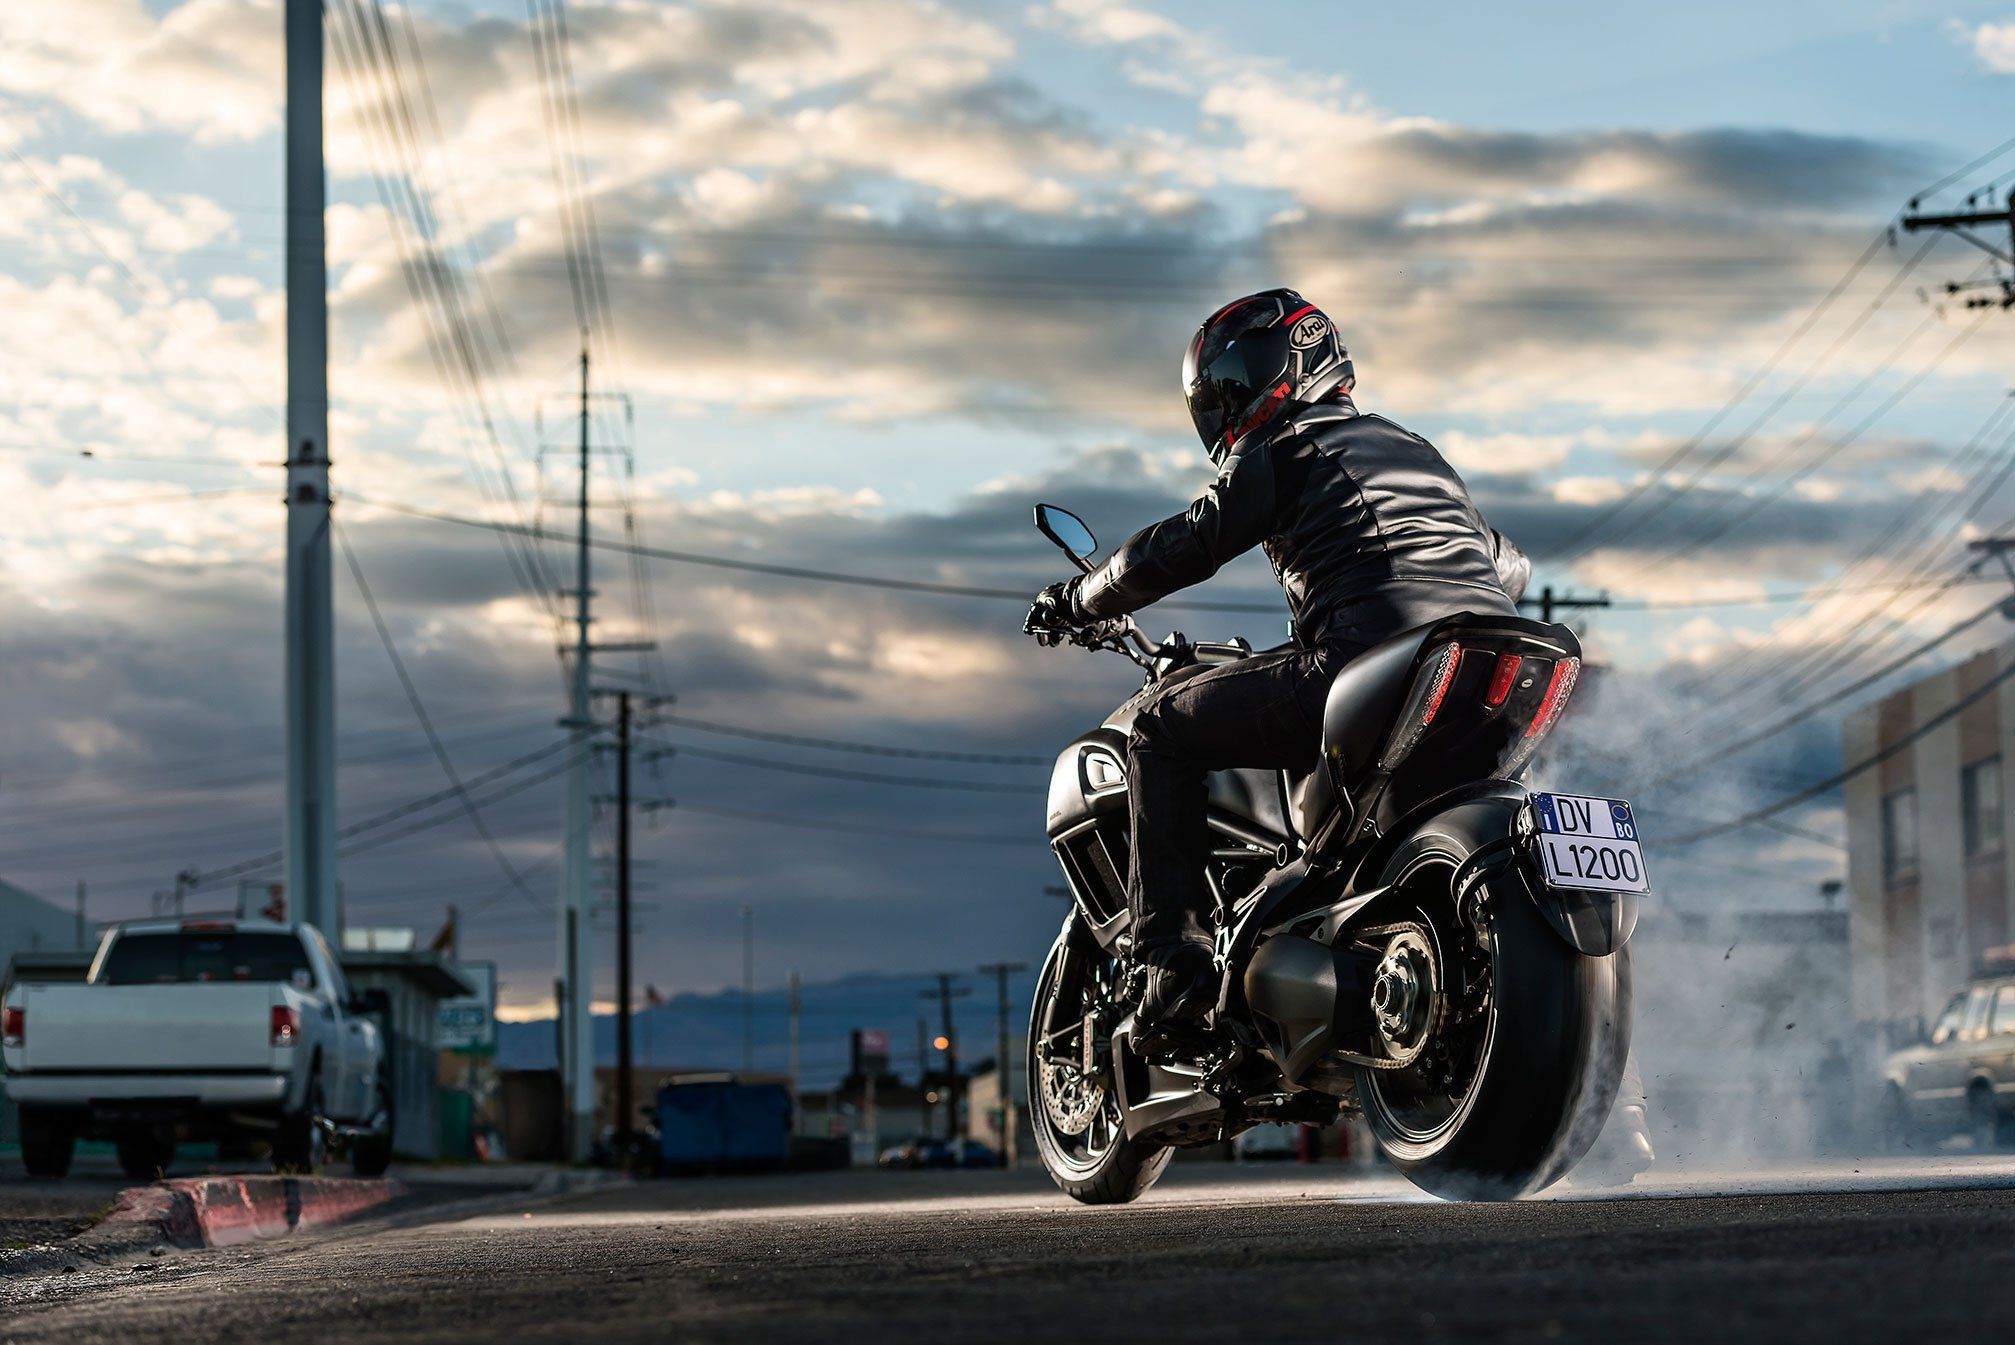 Motocicleta Wallpaper Mobile | Fondos de vehículos | Ducati diavel